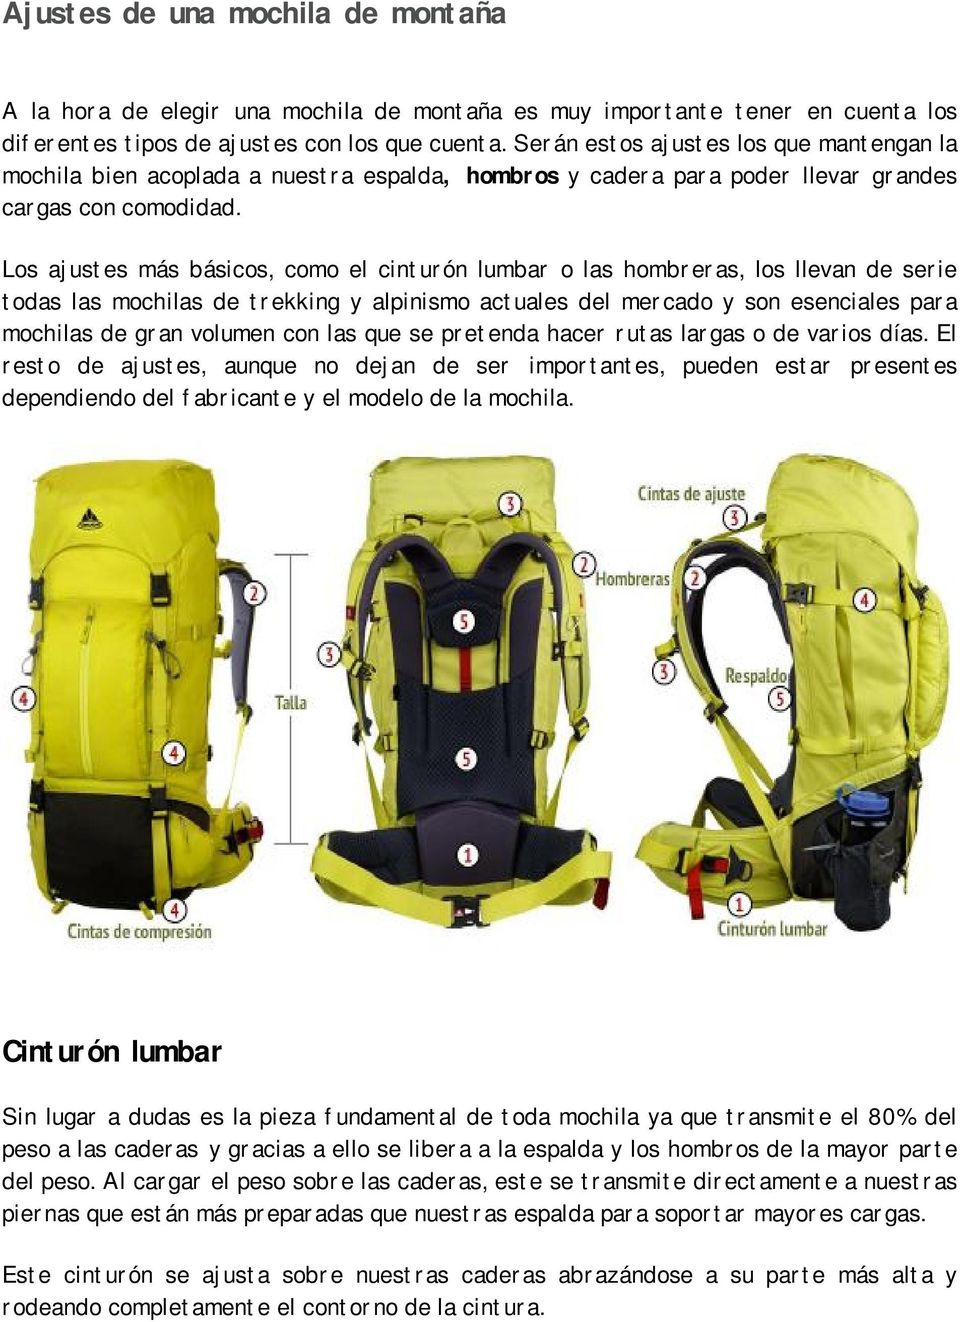 Los ajustes más básicos, como el cinturón lumbar o las hombreras, los llevan de serie todas las mochilas de trekking y alpinismo actuales del mercado y son esenciales para mochilas de gran volumen